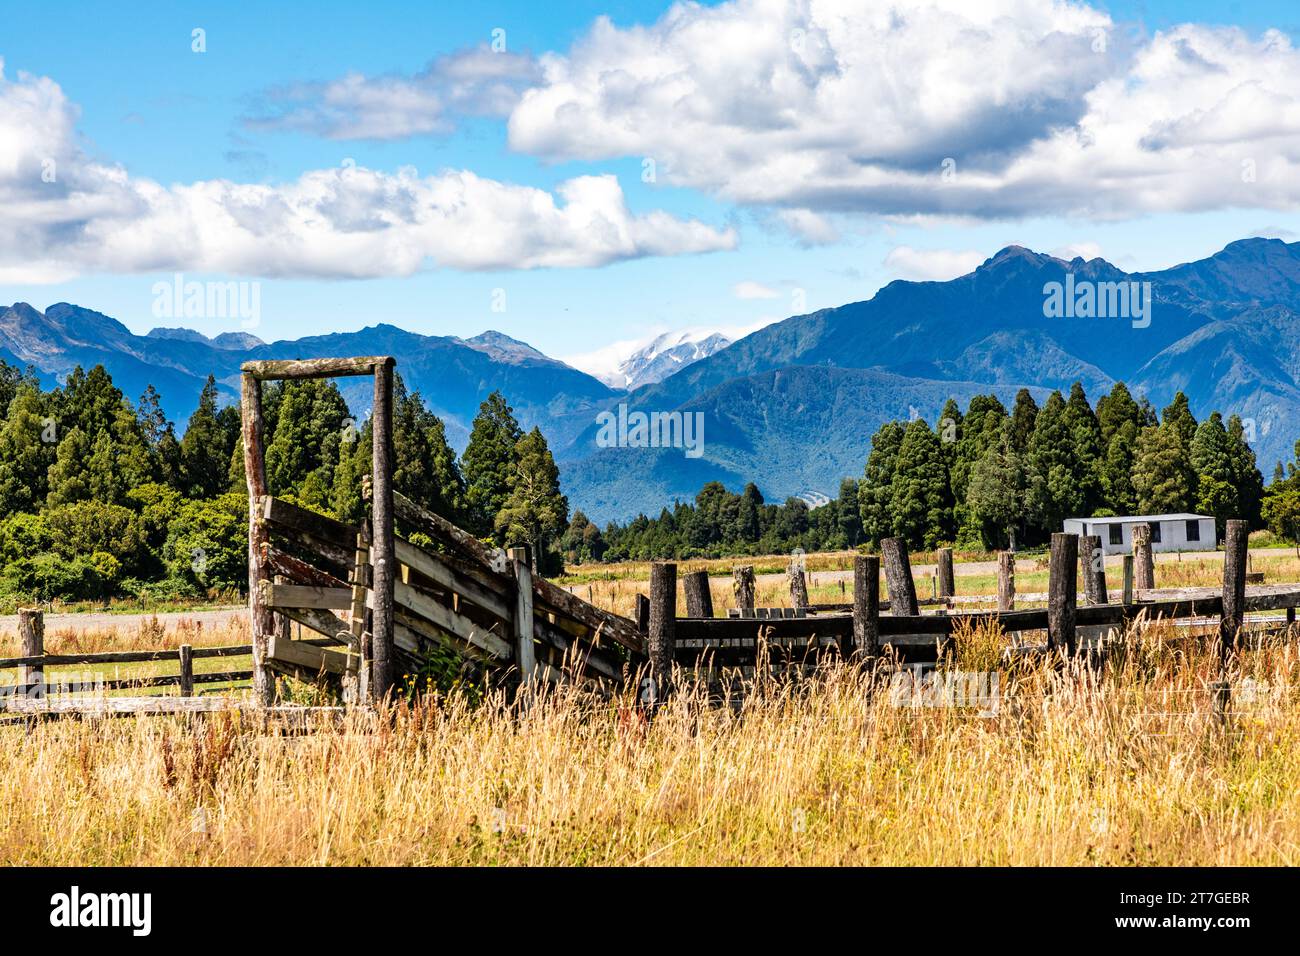 Vista tipica della nuova Zelanda, delle fattorie e delle montagne. Vicino a Hokitika sulla costa occidentale. Foto Stock